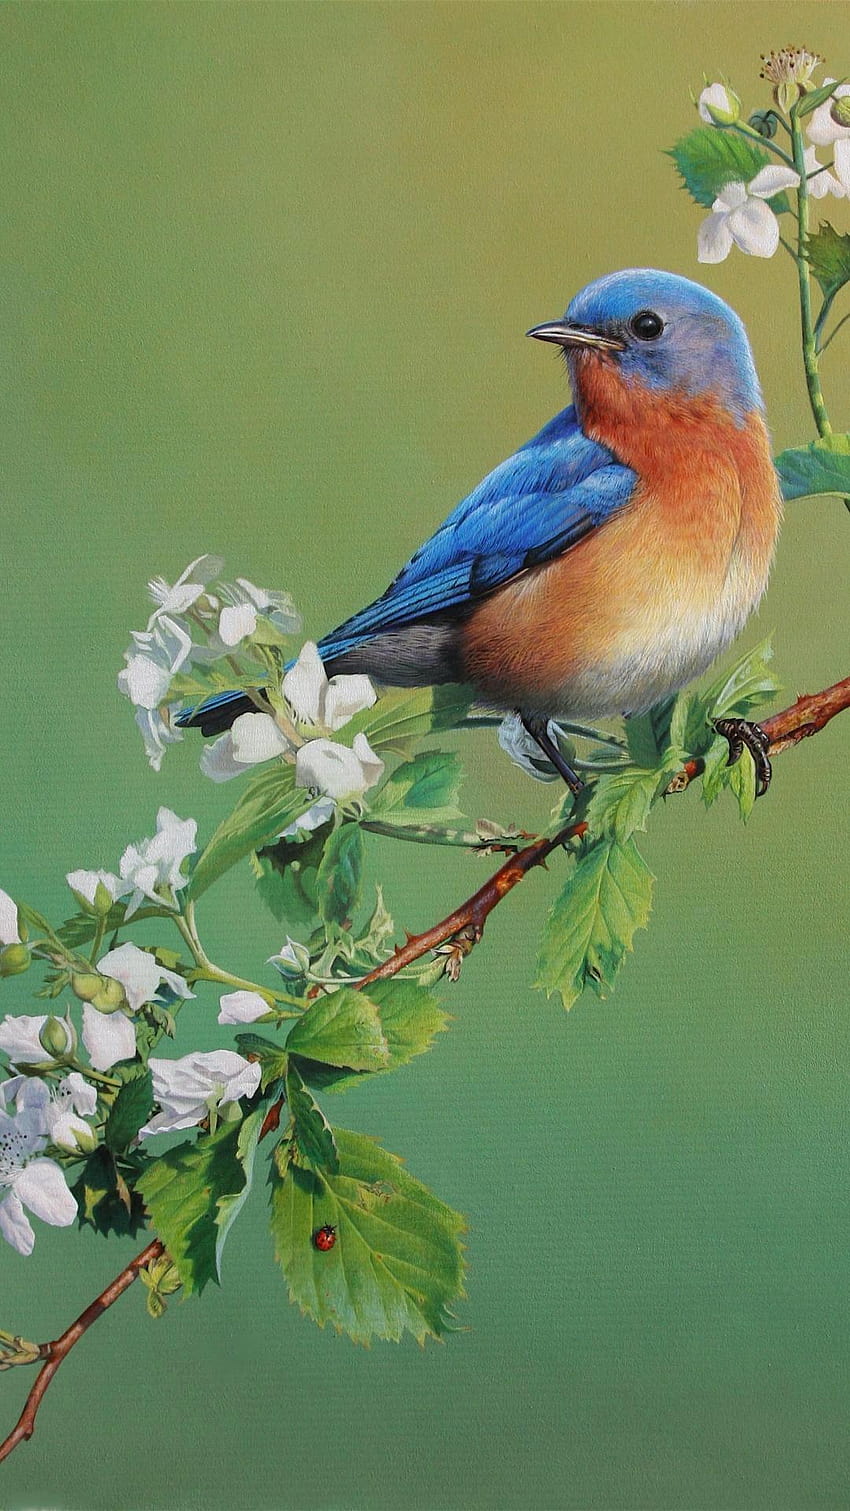 Blue Bird wallpaper  ForWallpapercom  Blue bird Bird Bird wallpaper